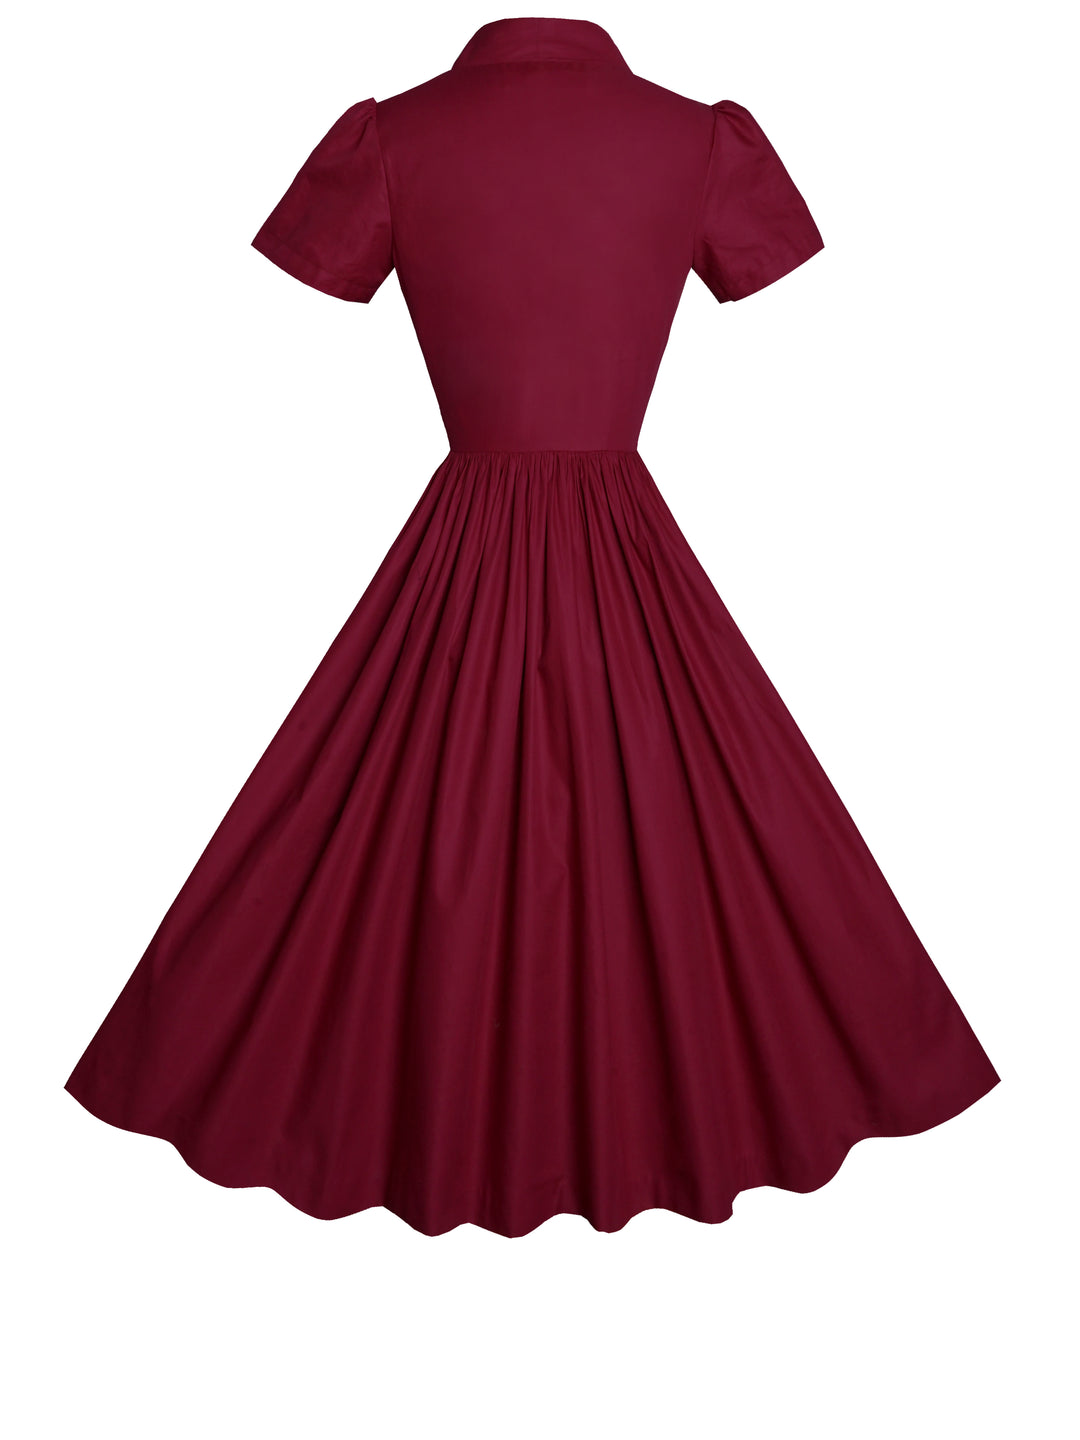 MTO - Bonnie Dress in Burgundy Cotton